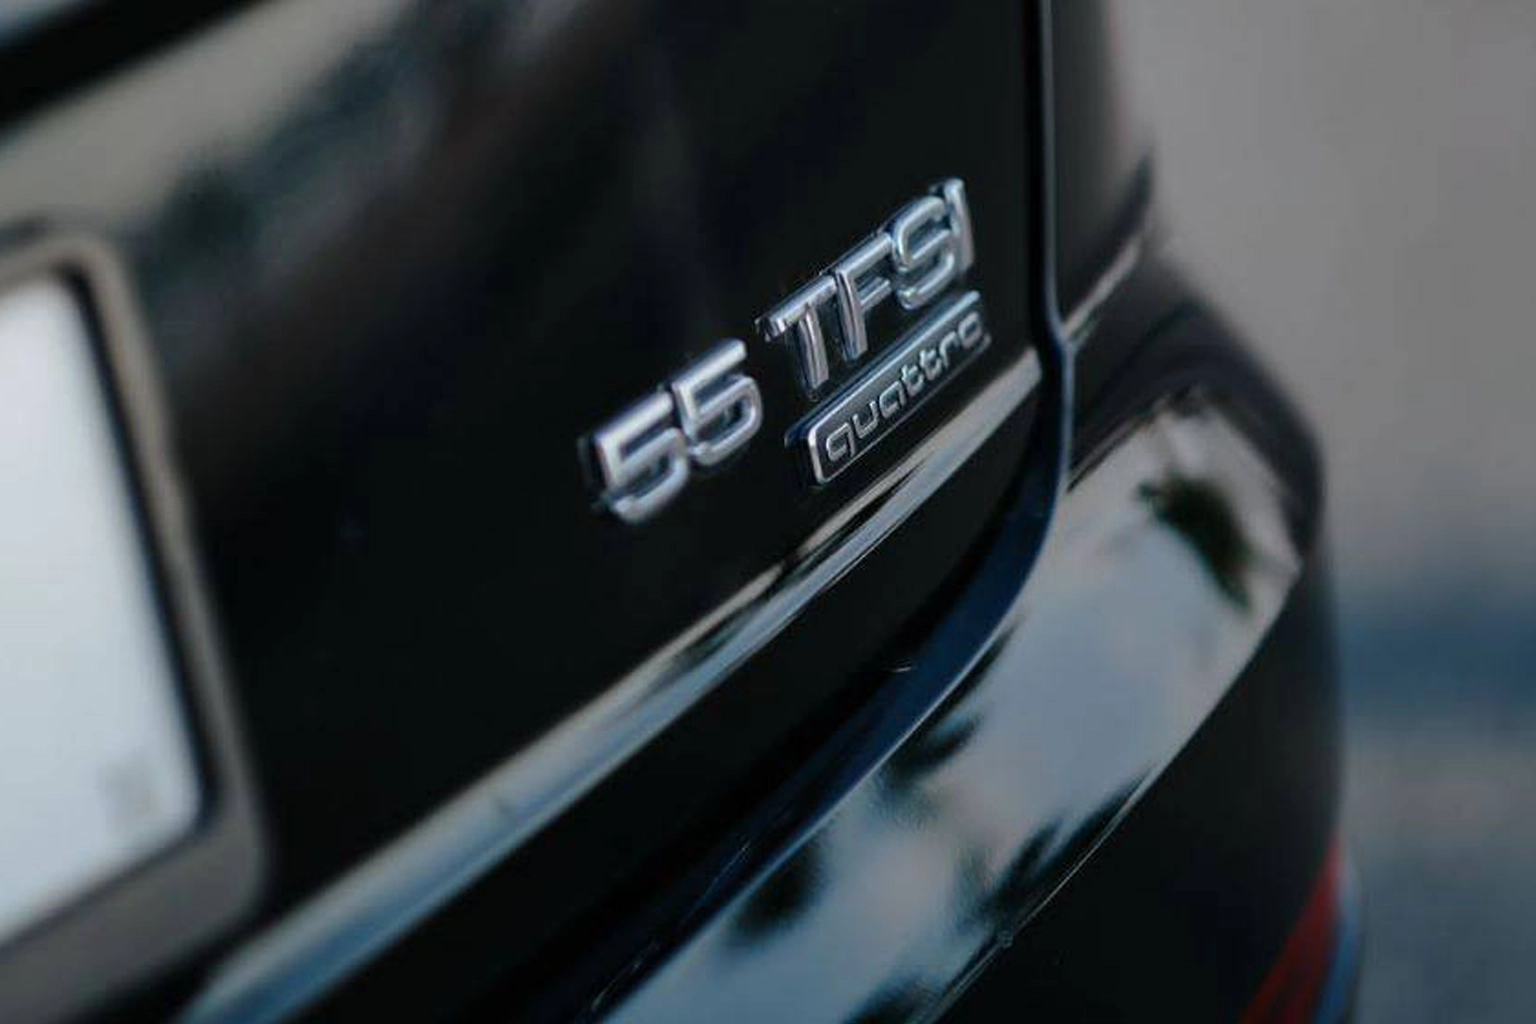 Audi Q8 5